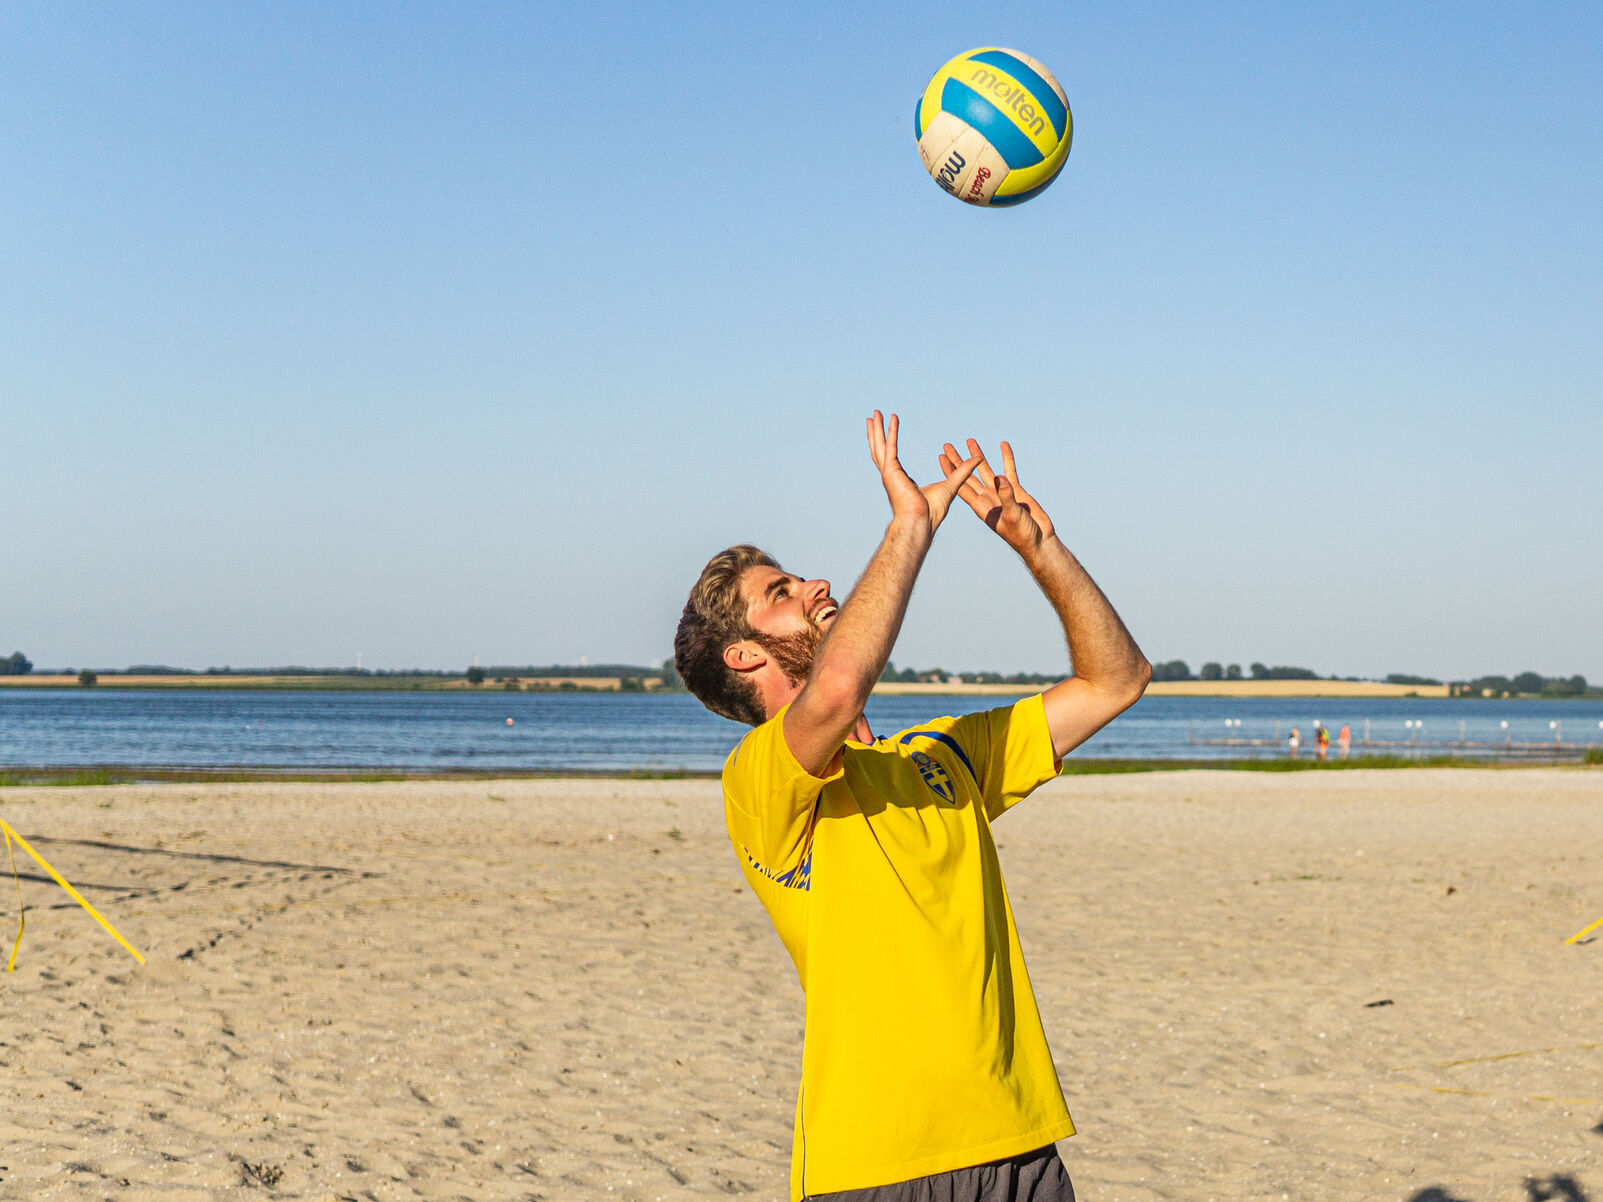 Eine Person spielt am Strand mit einem Volleyball.